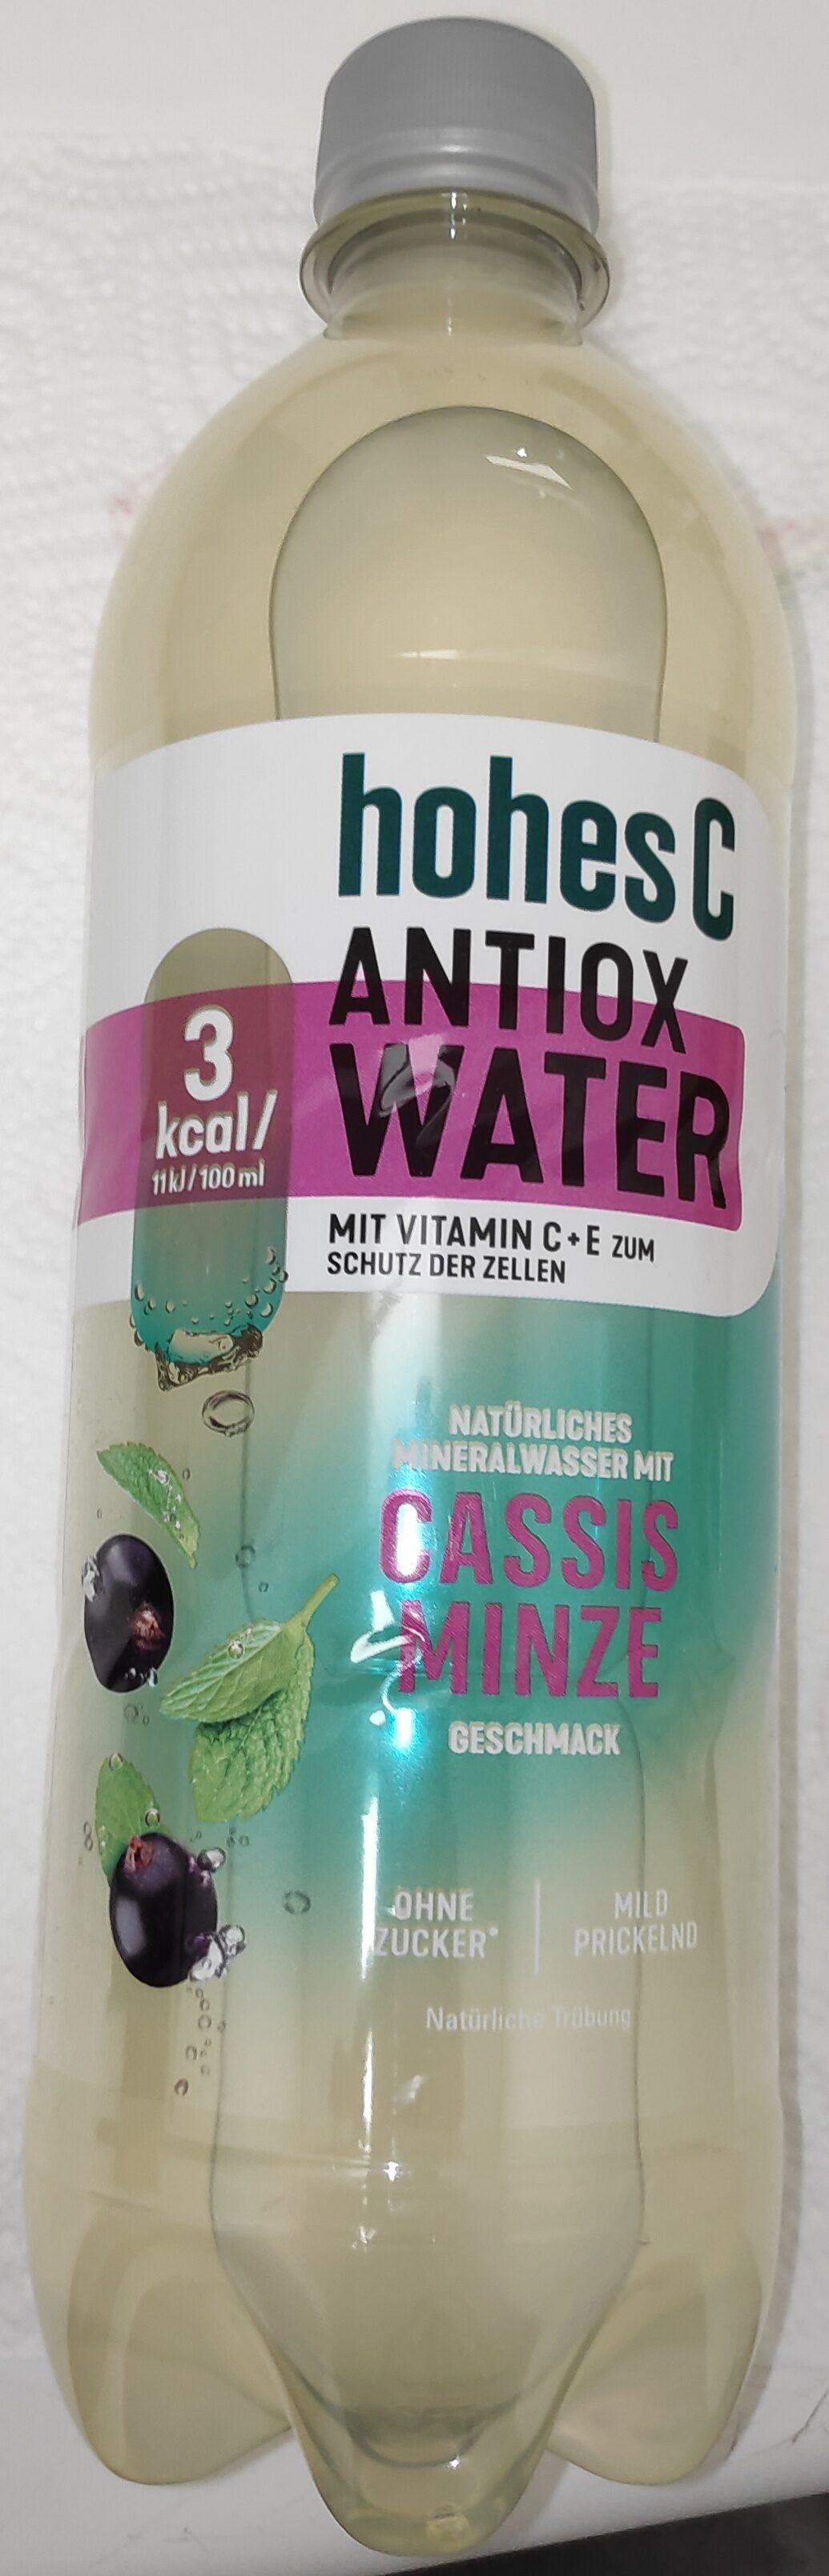 hohes C Wasser Antiox Cassis Minze - Produkt